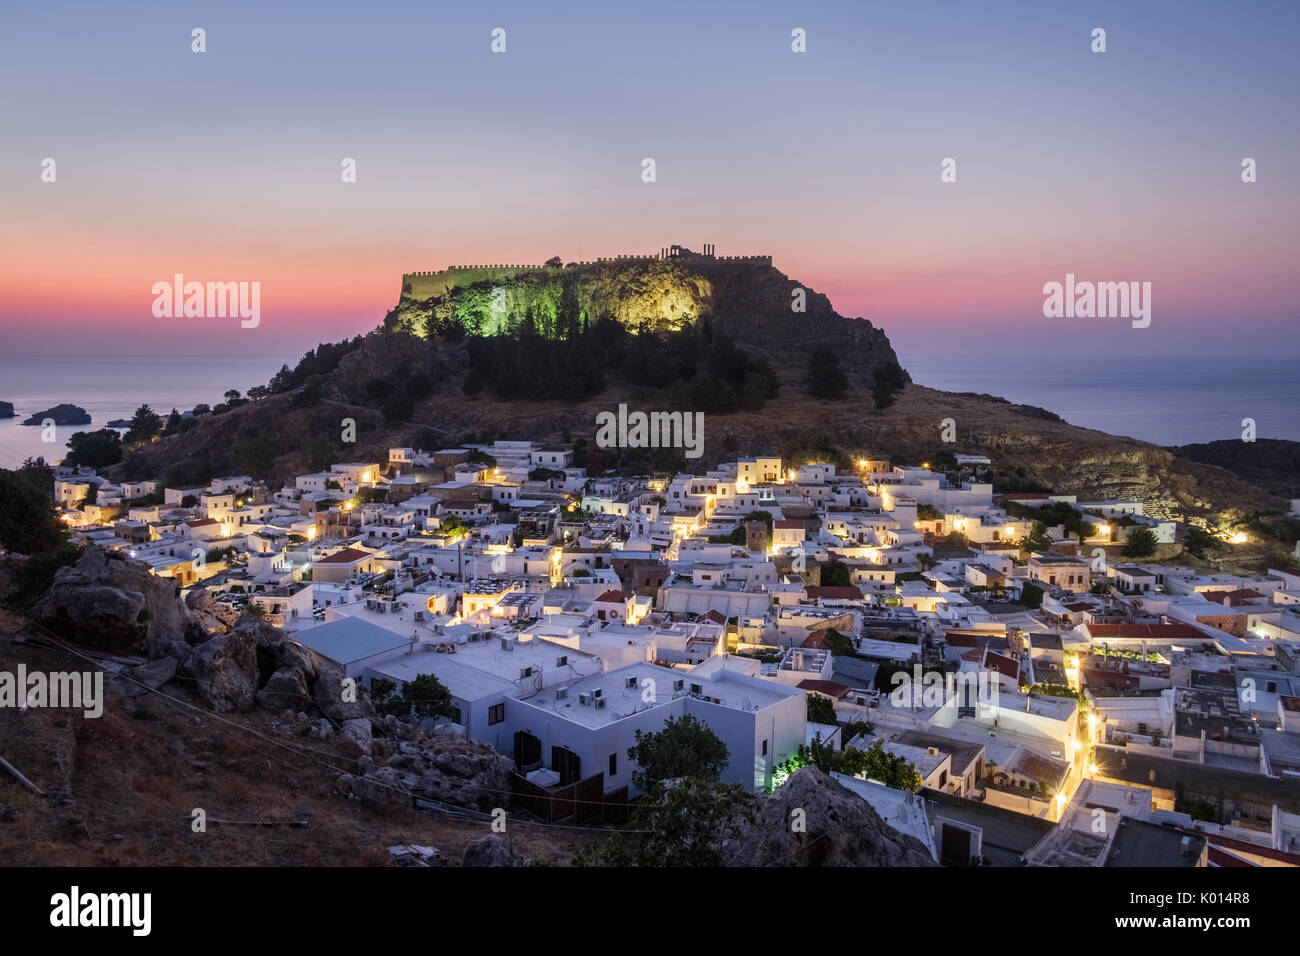 Verano amanecer sobre el pueblo de Lindos, situado debajo de la Acrópolis. Rodas, Grecia Foto de stock